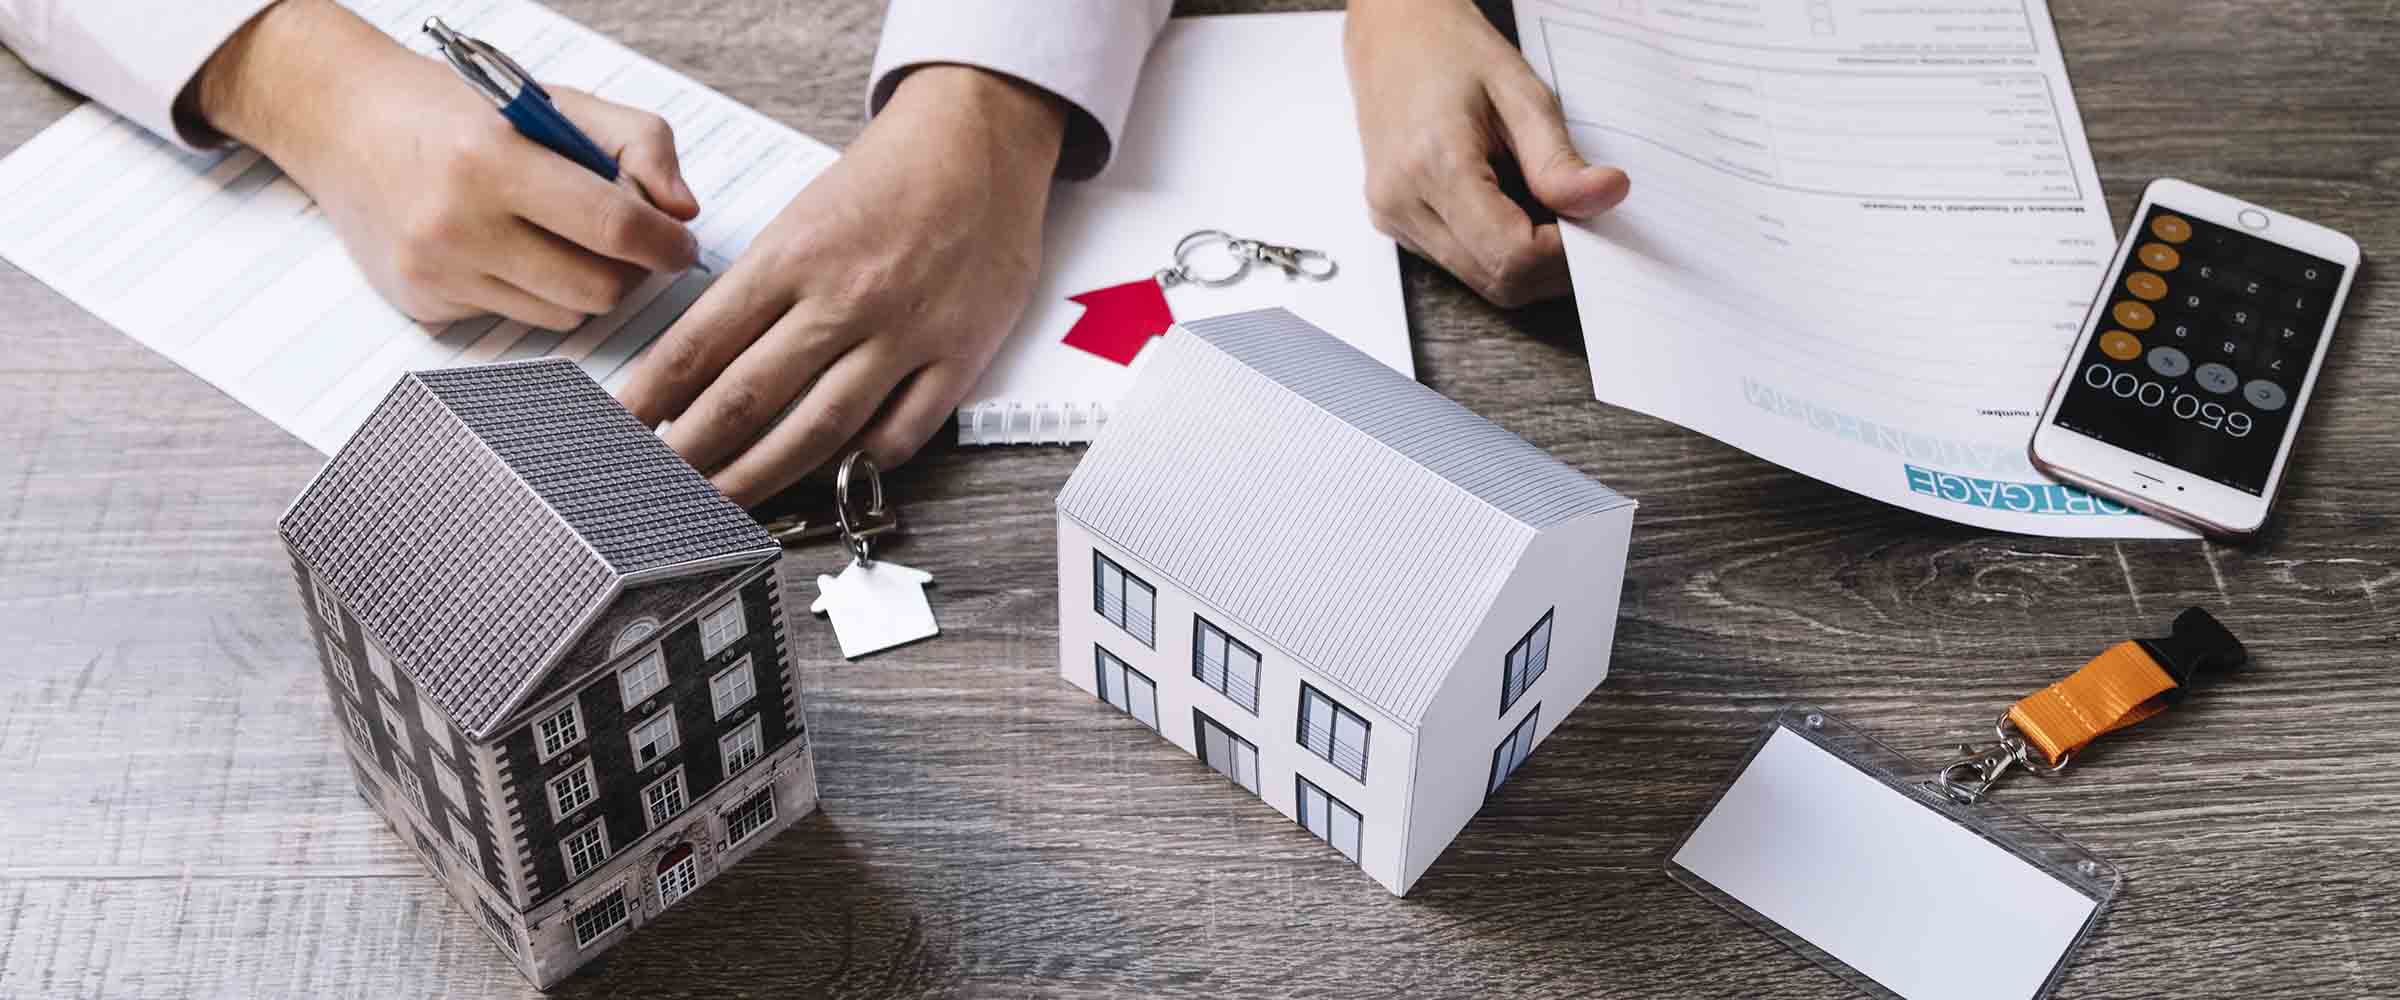 La Hipoteca: Contratos | Lanzate Solo el